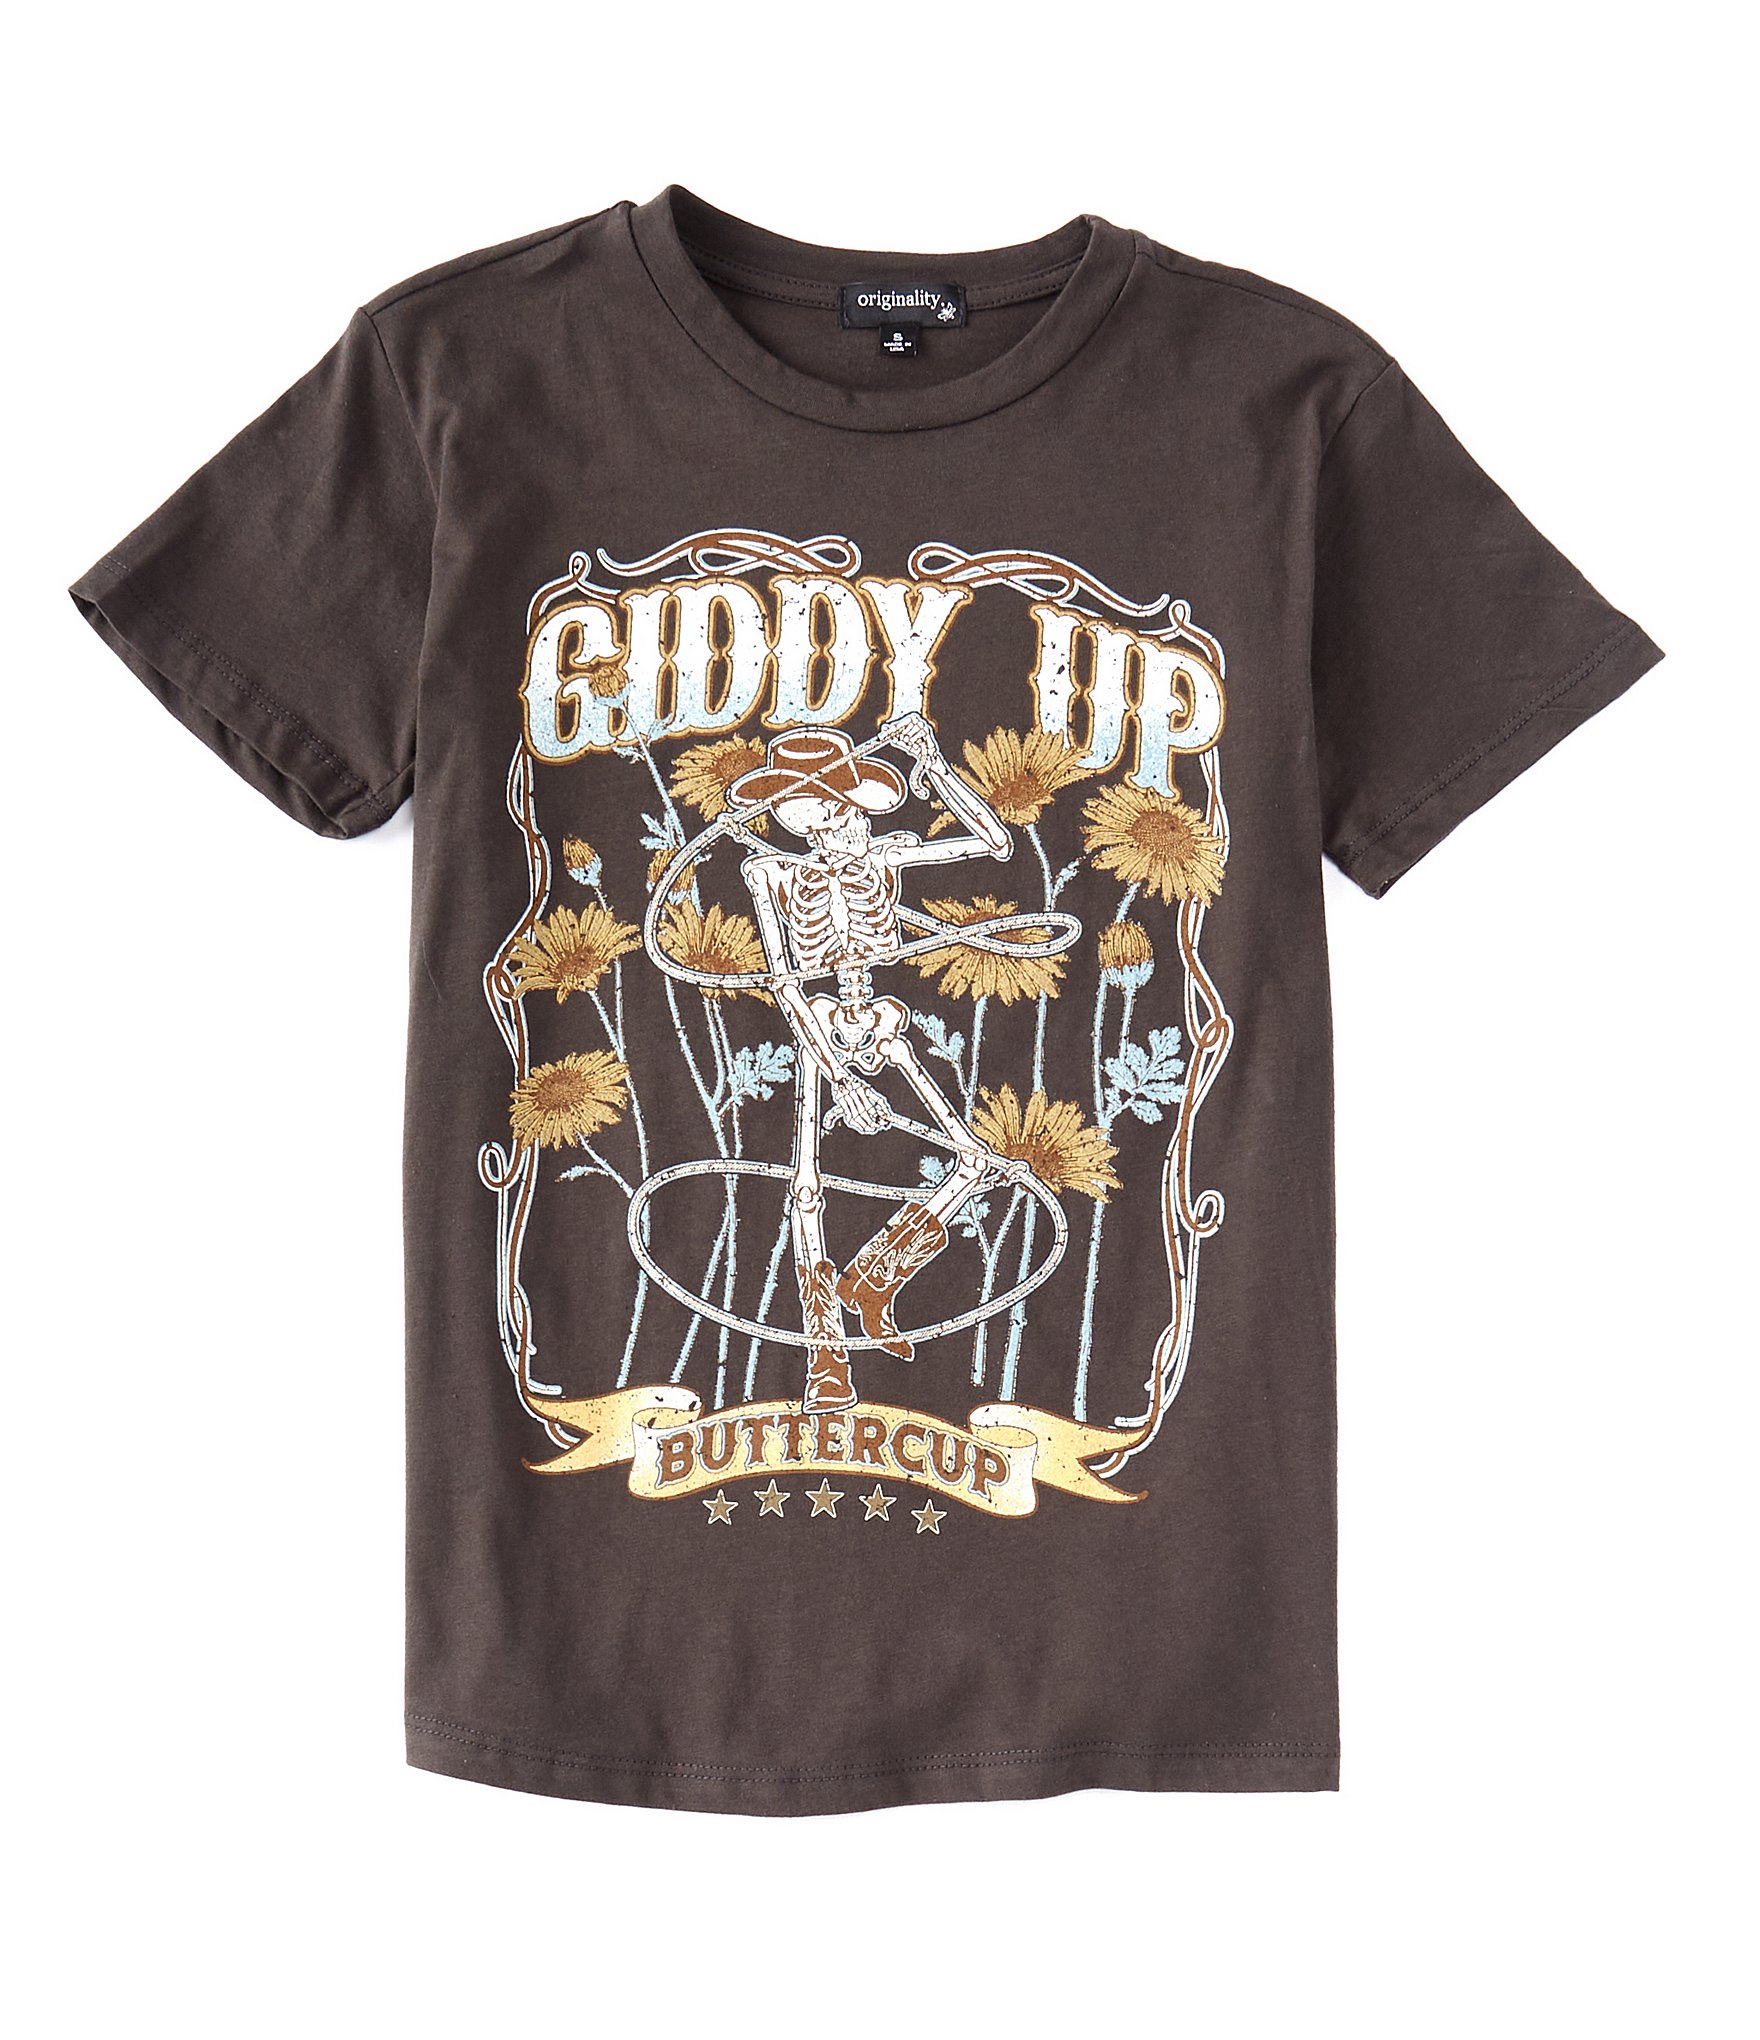 Custom Git Gud Classic T-shirt By Miyucapy - Artistshot